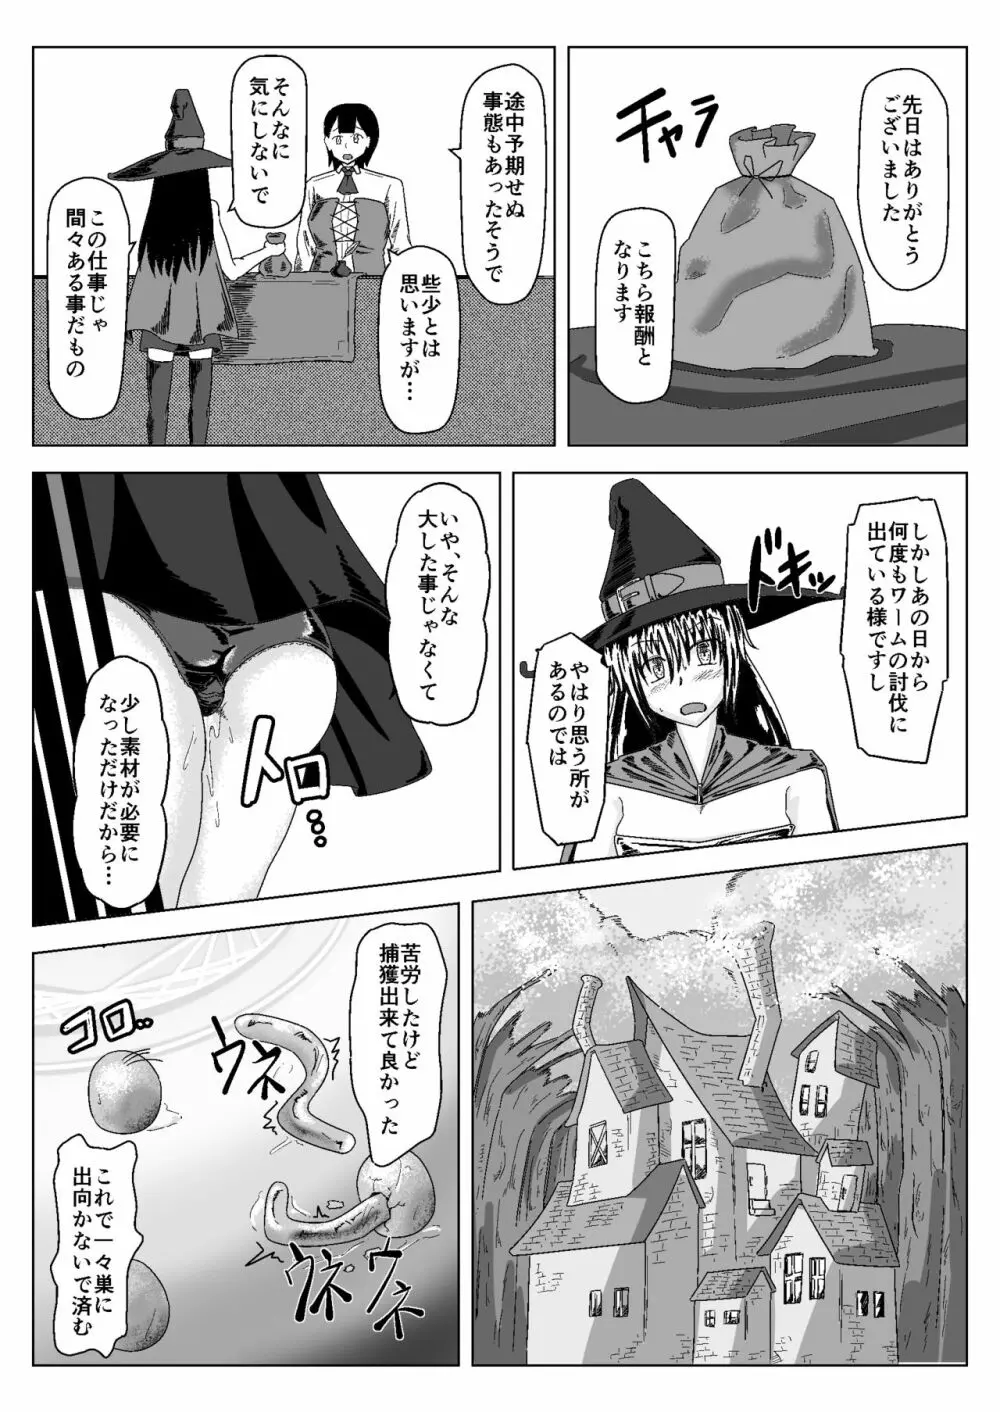 Witch Worm Tamago Umitsuke Sanran Mono 19ページ